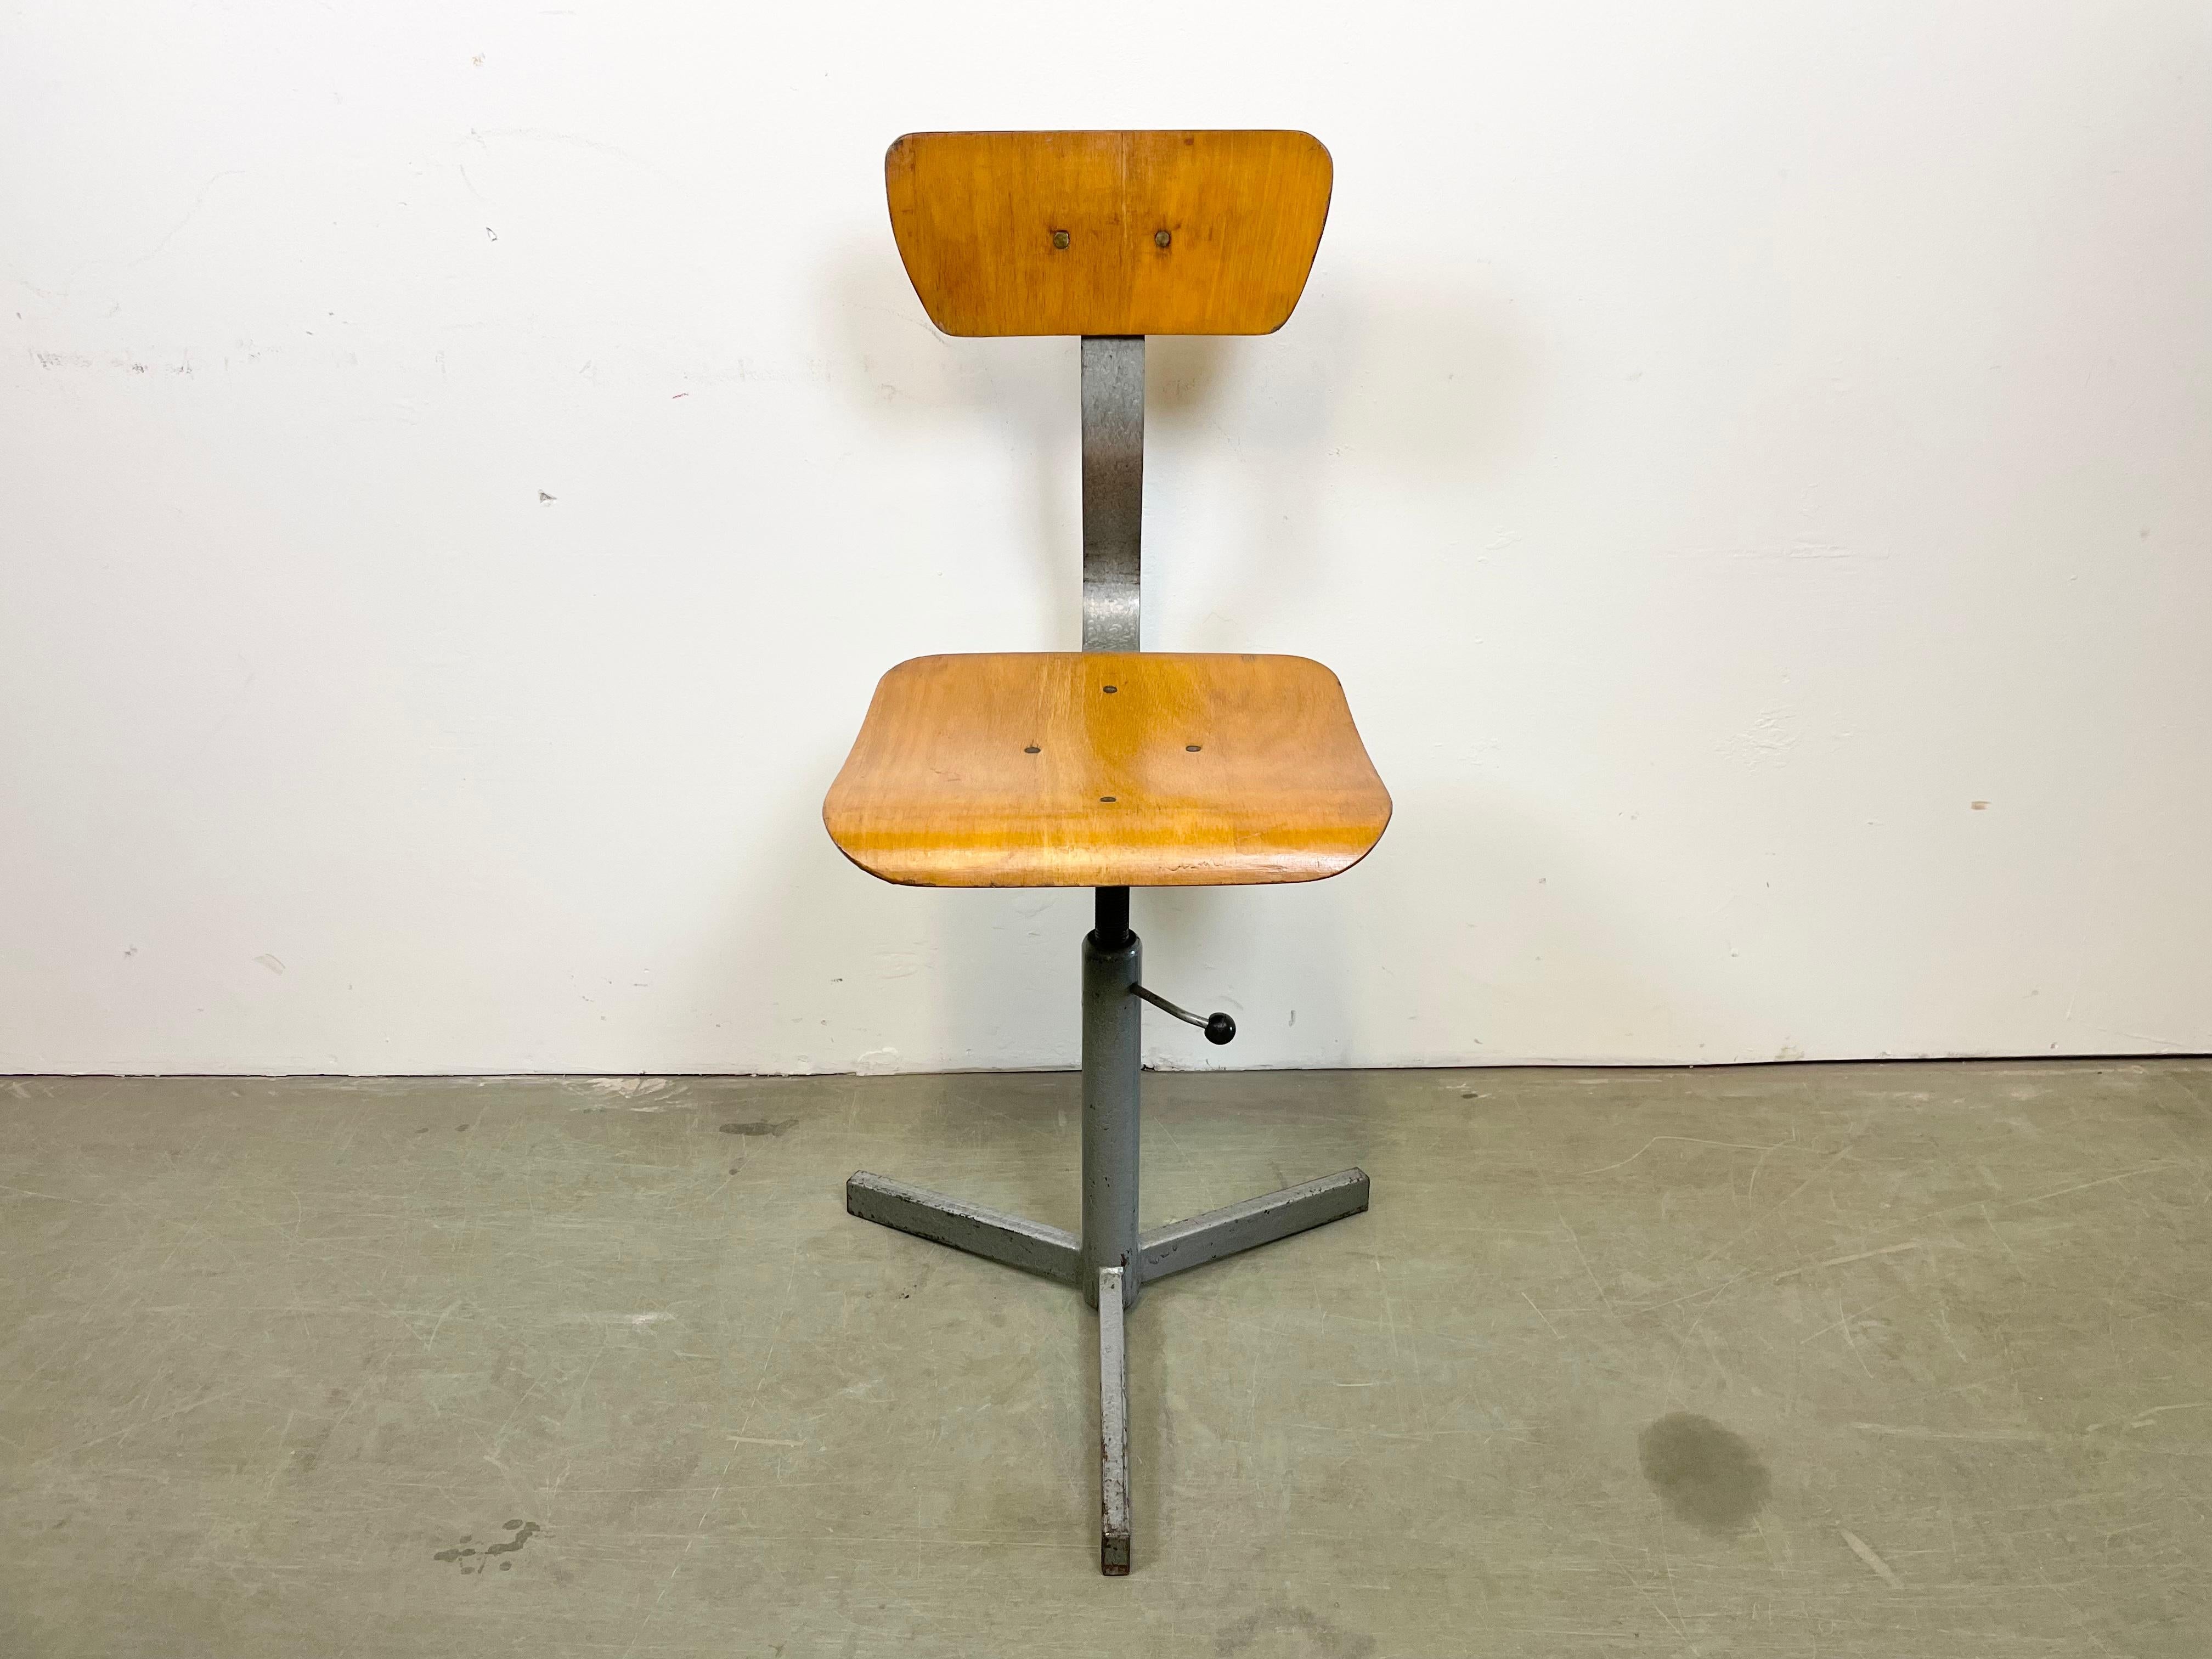 Chaise pivotante industrielle réglable en hauteur, fabriquée en ex-Tchécoslovaquie dans les années 1960. La construction est en fer peint en gris et comporte un siège et un dossier en contreplaqué. La chaise est en très bon état vintage. Le poids de